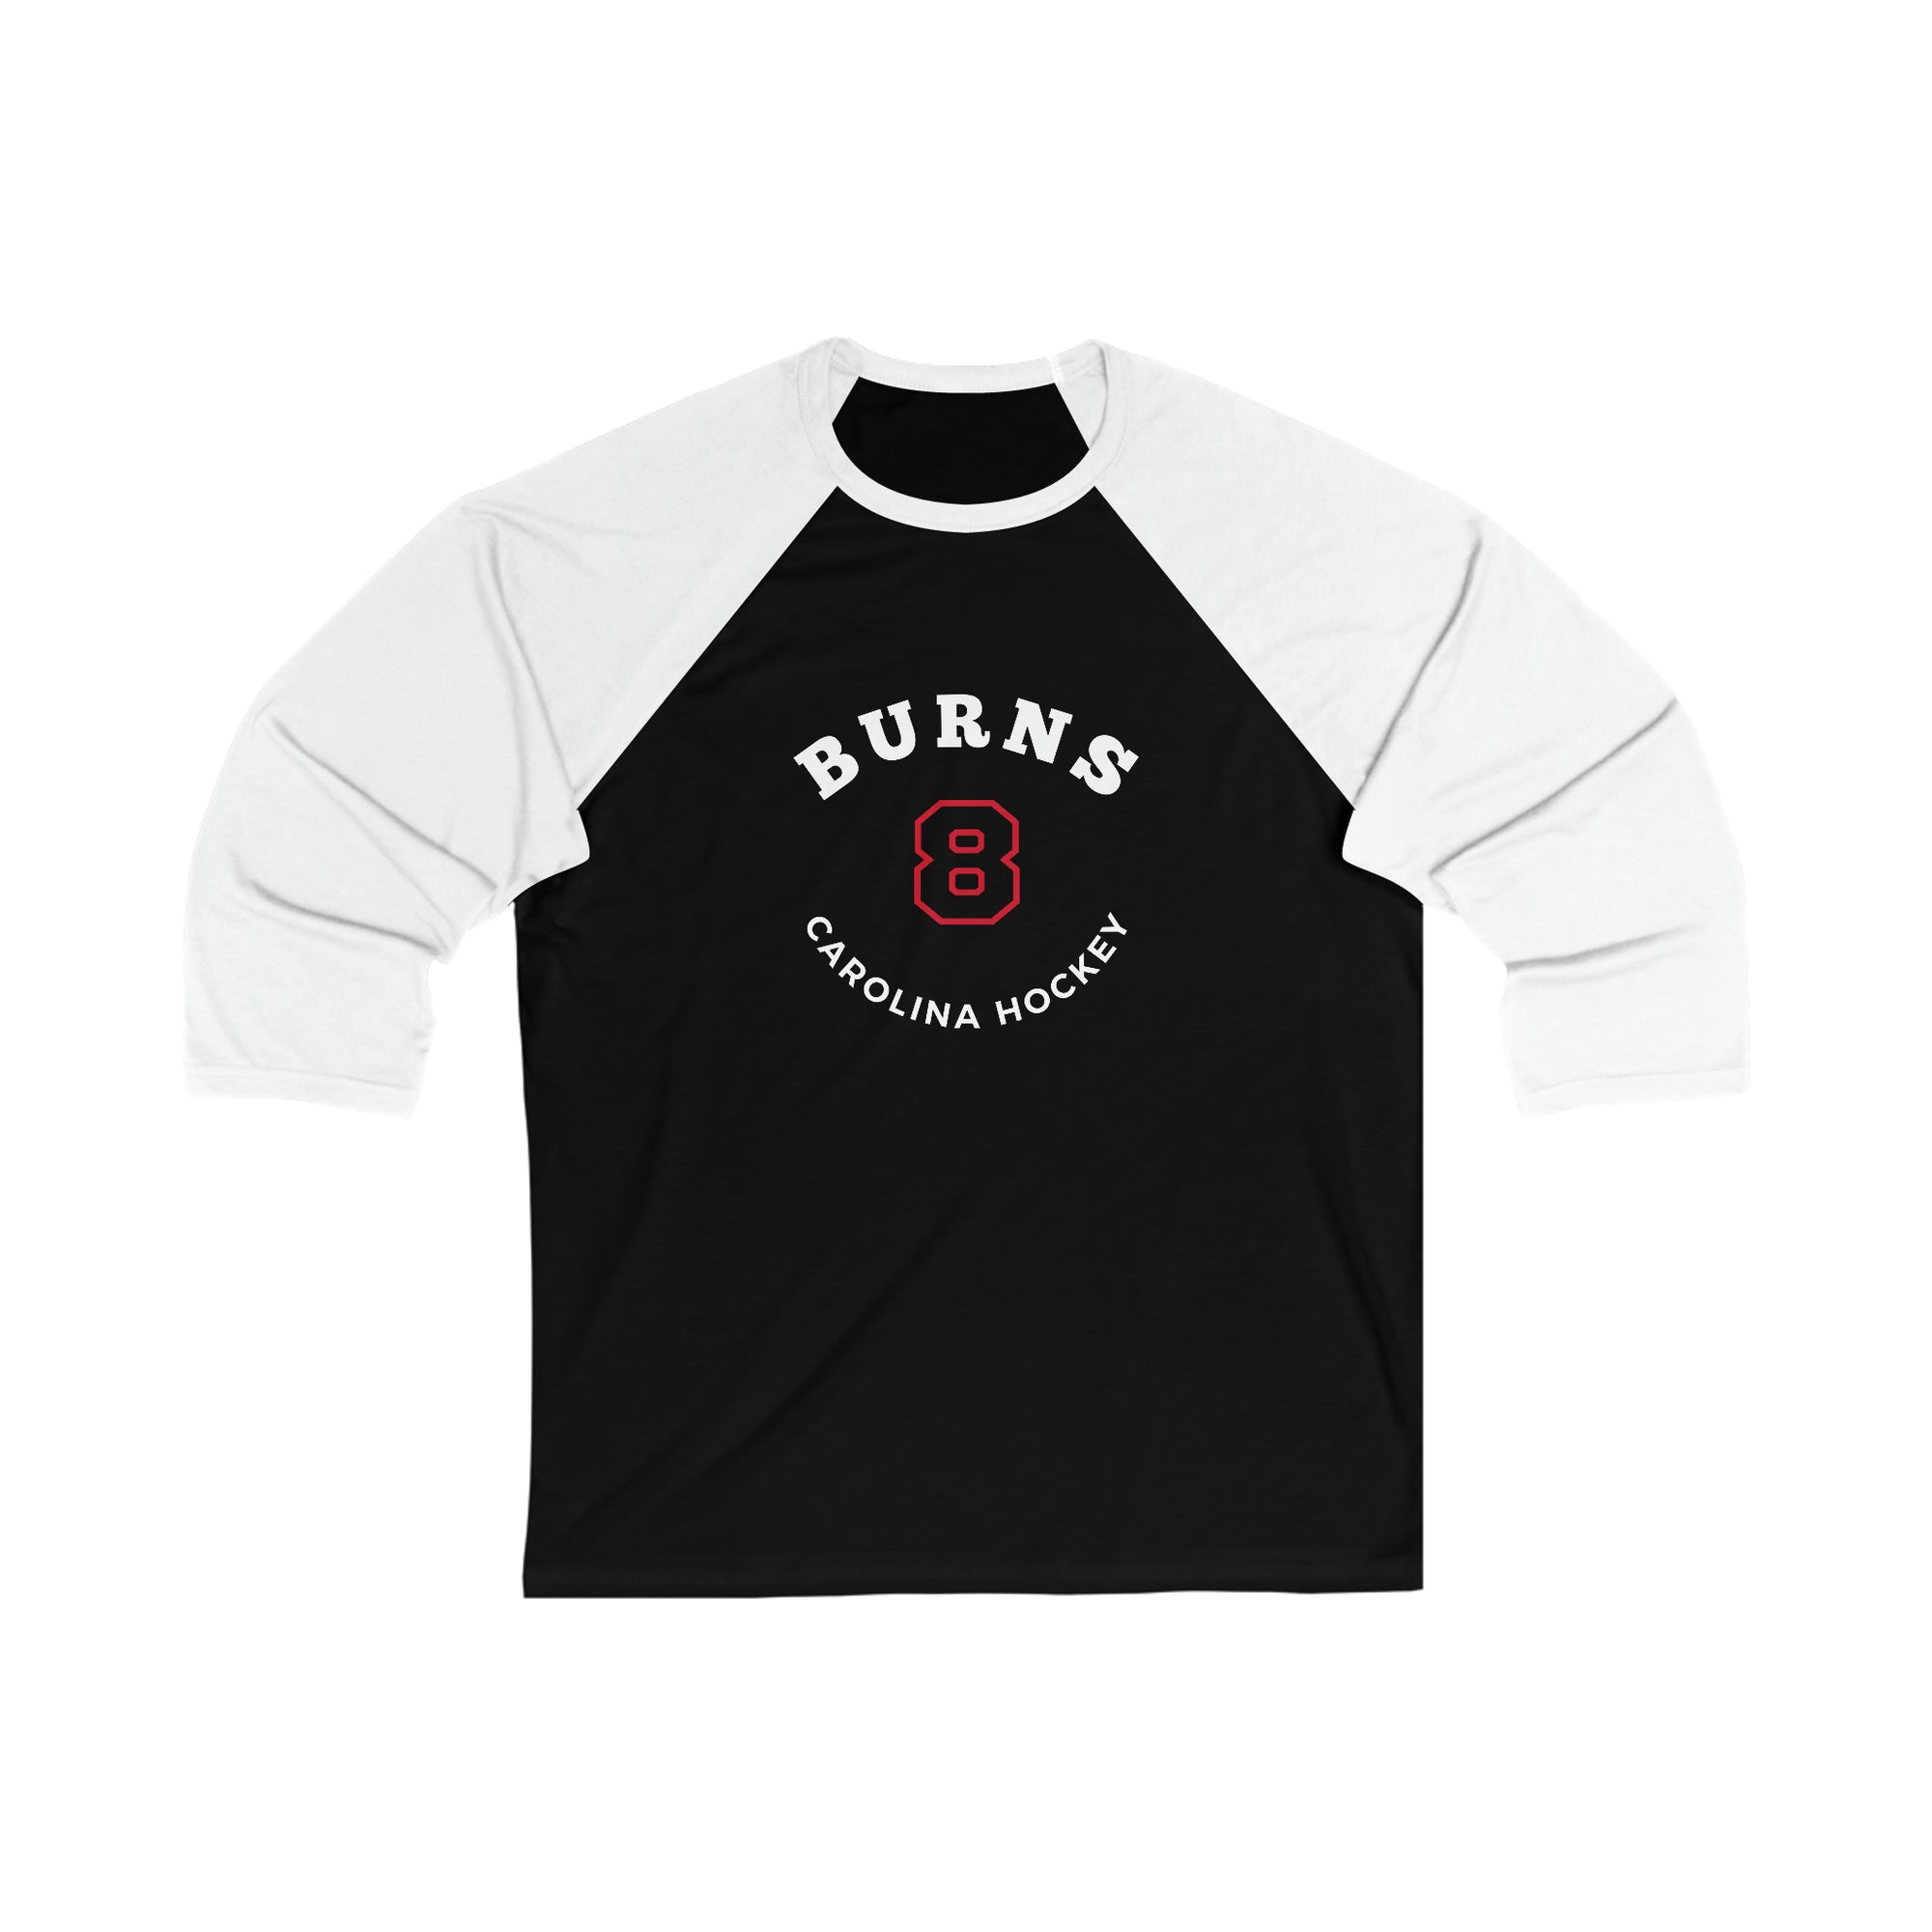 Burns 8 Carolina Hockey Number Arch Design Unisex Tri-Blend 3/4 Sleeve Raglan Baseball Shirt